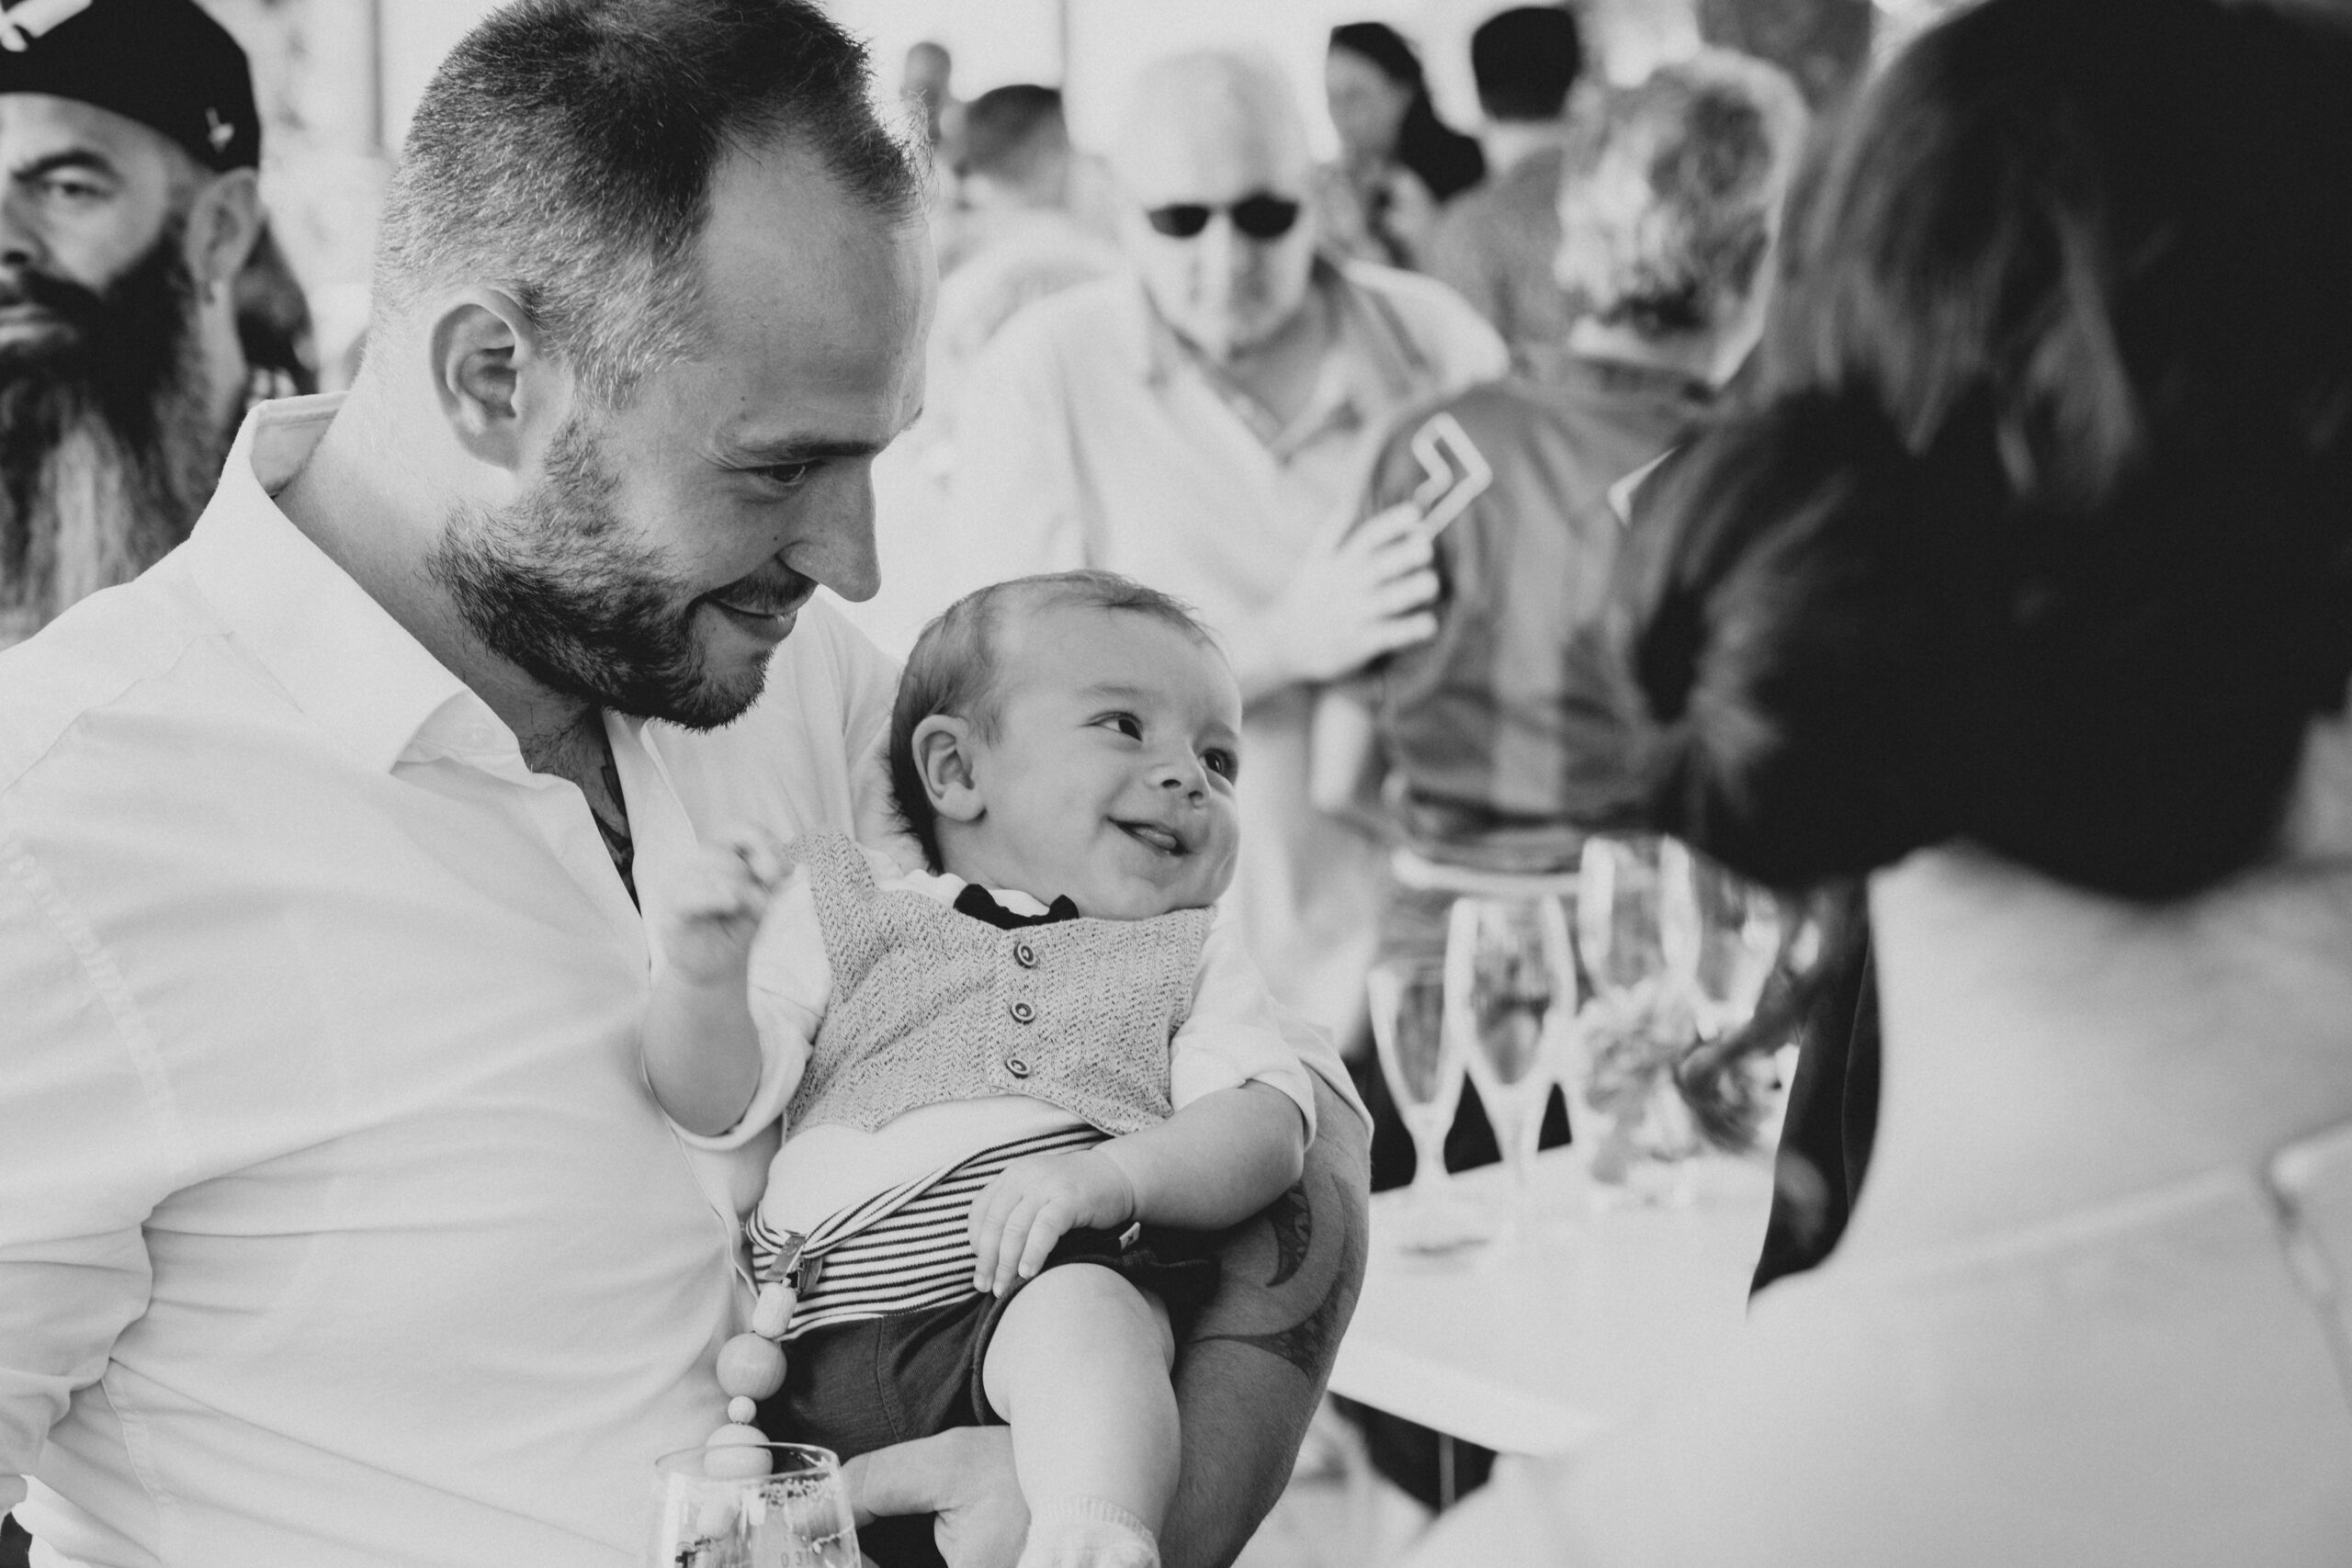 Hochzeitsgast hat seinen kleinen Sohn auf dem Arm der zu anderen Hochzeitsgästen grinst. Sehr intimes und zuckersüsses Foto.